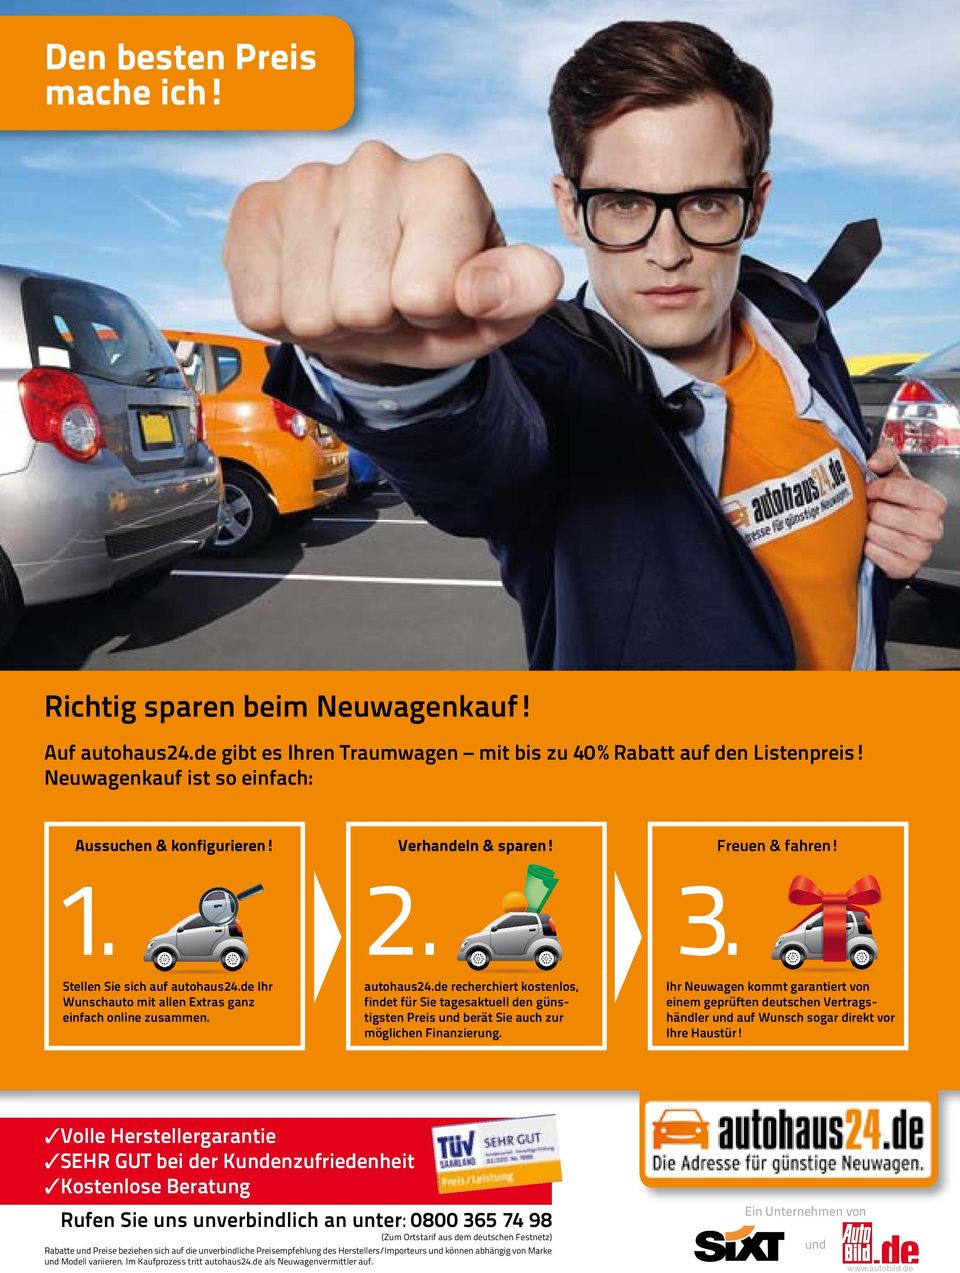 autohaus24.de recherchiert kostenlos, findet für Sie tagesaktuell den günstigsten Preis und berät Sie auch zur möglichen Finanzierung.